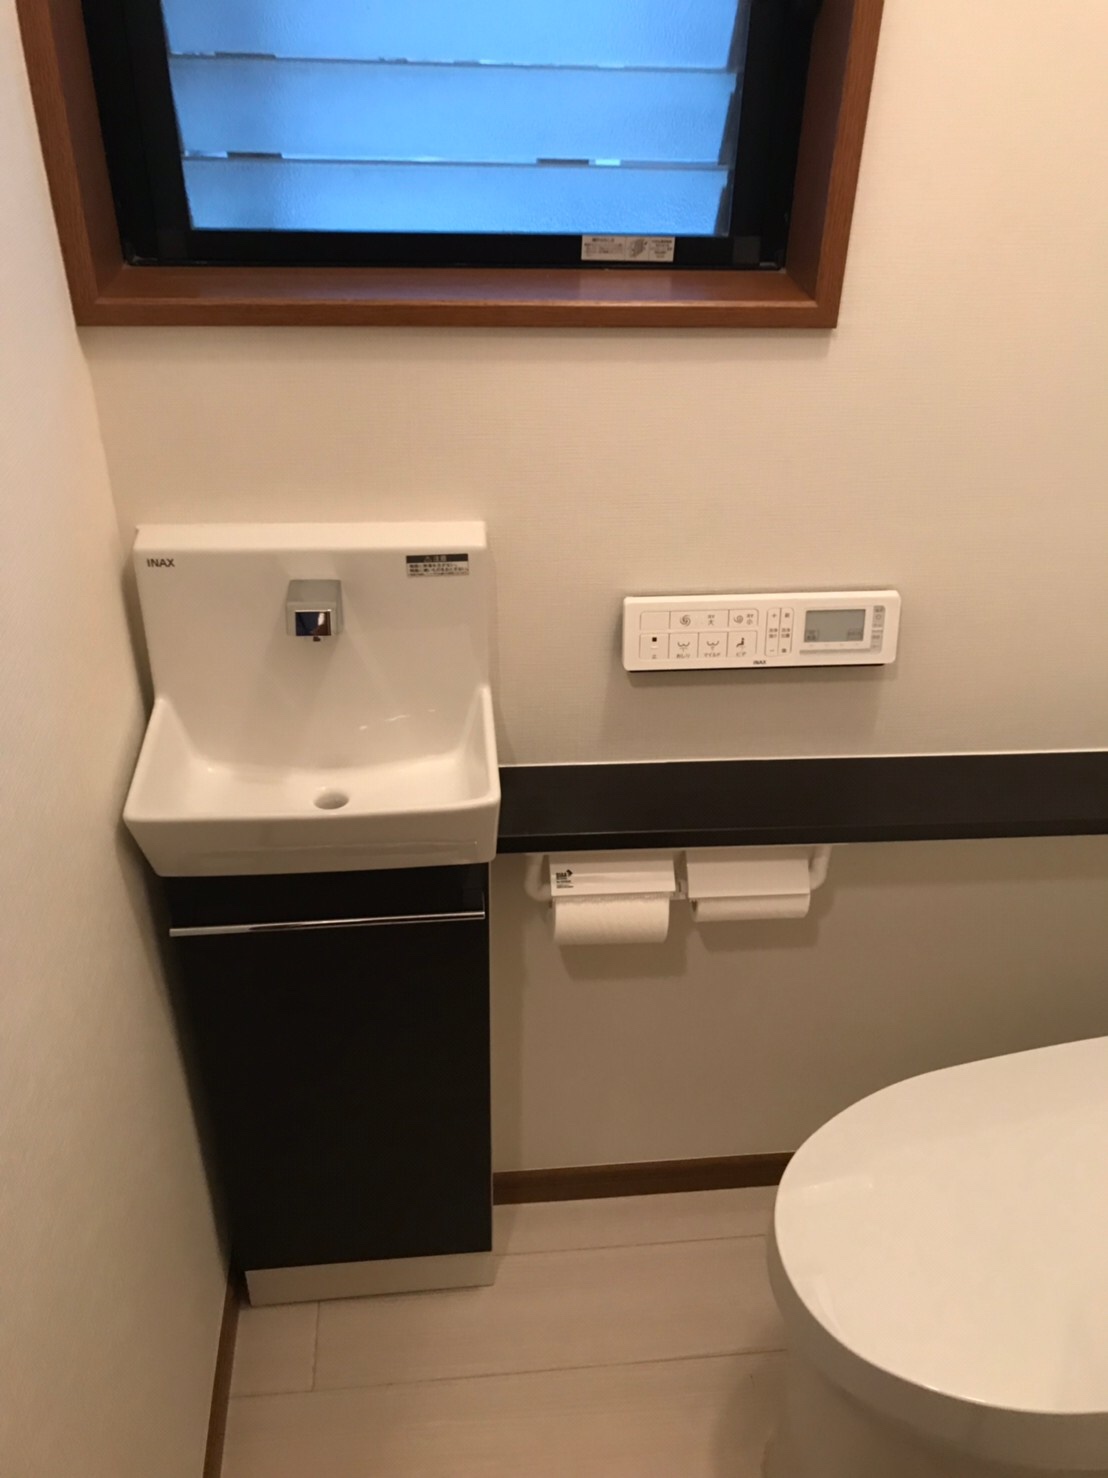 LIXILトイレ「サティスS」手洗い器「コフレル」 埼玉のリフォームはキューブリノベーションへ